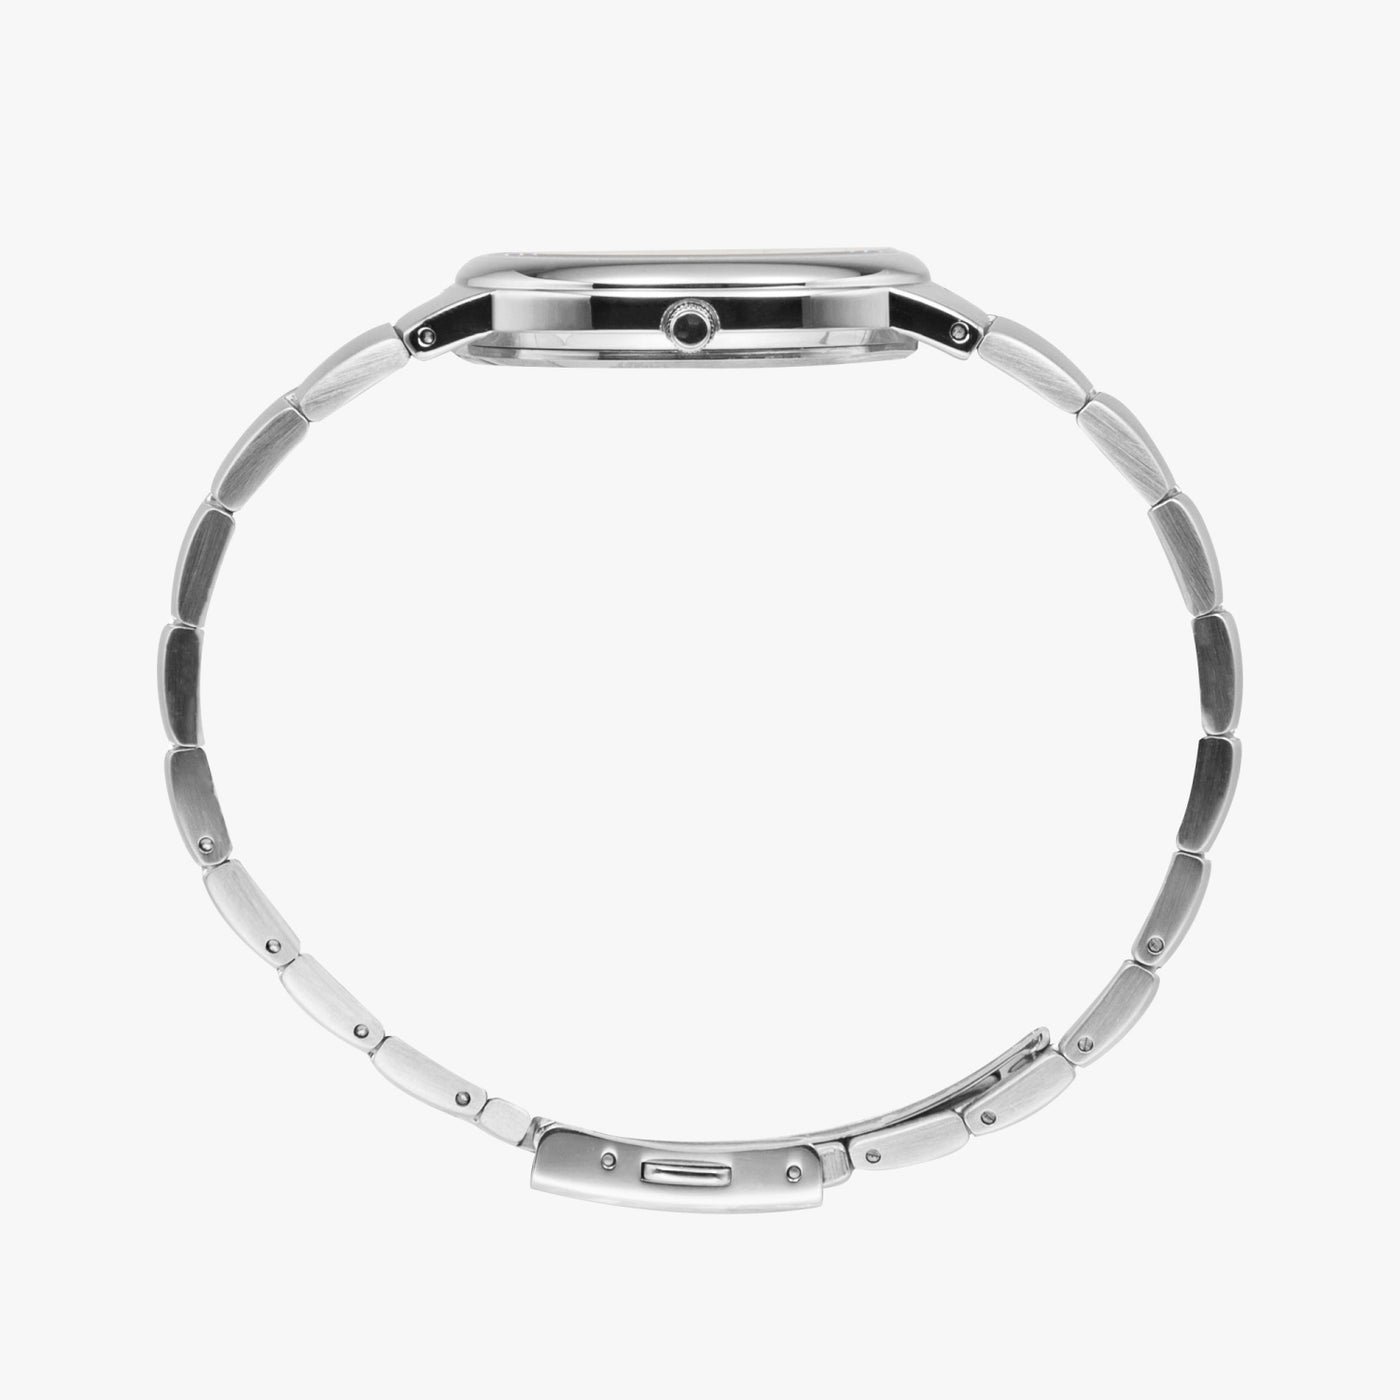 Popeye II - Instafamous Steel Strap Quartz watch